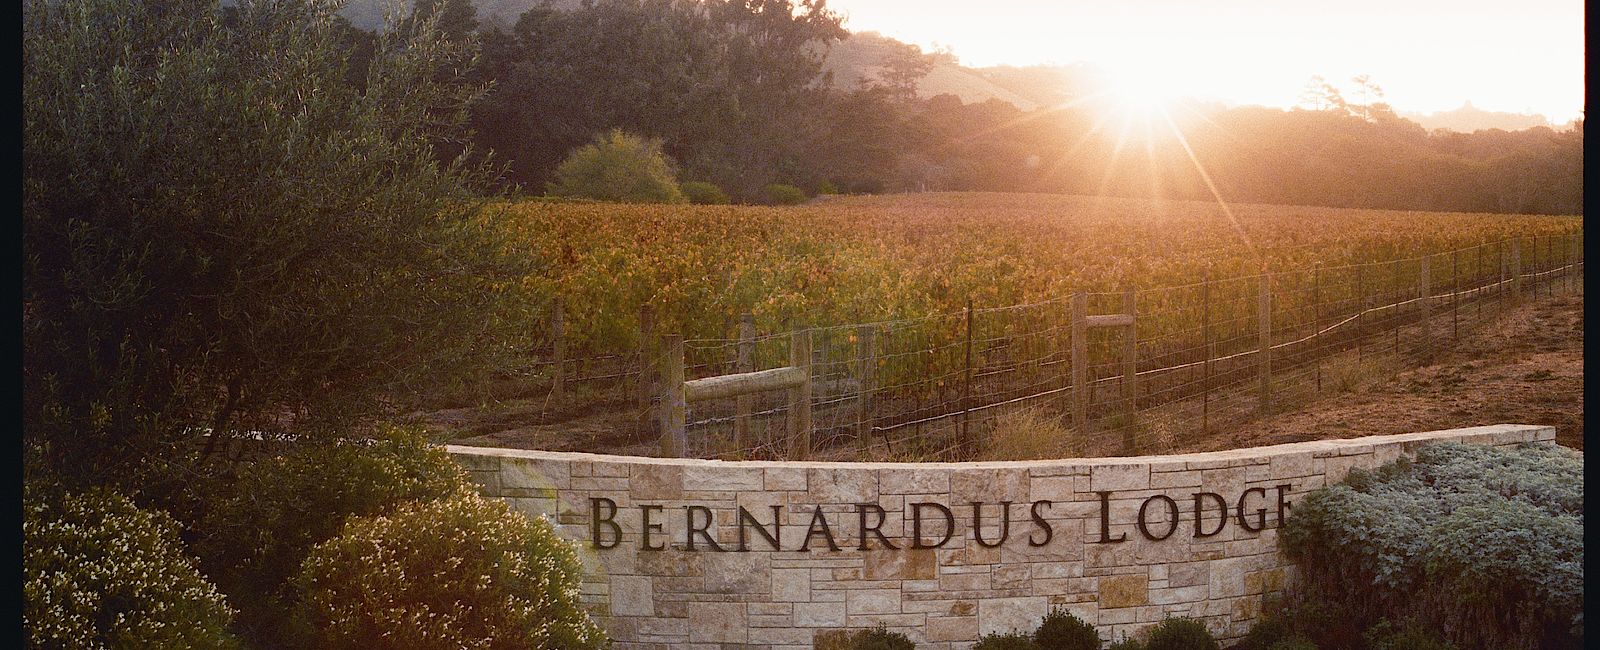 HOTEL TIPPS
 Bernardus Lodge & Spa 
 Kulinarisches Luxus Anwesen mit einer erlesen Weinauswahl 